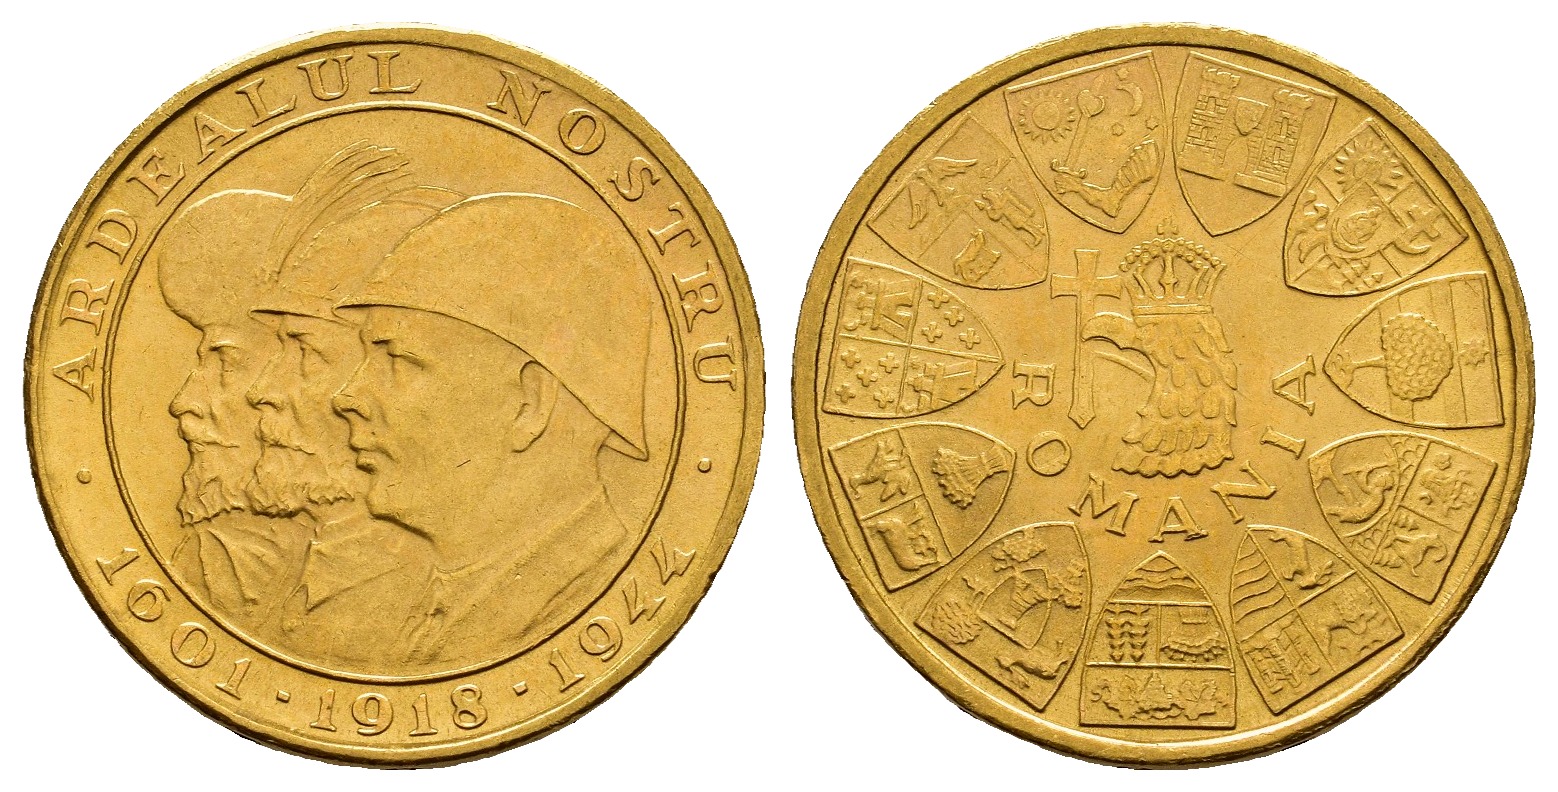 PEUS 8436 Rumänien 5,9 g Feingold. Wiedereingliederung Siebenbürgens 20 Lei GOLD 1944 Kl. Kratzer, Vorzüglich